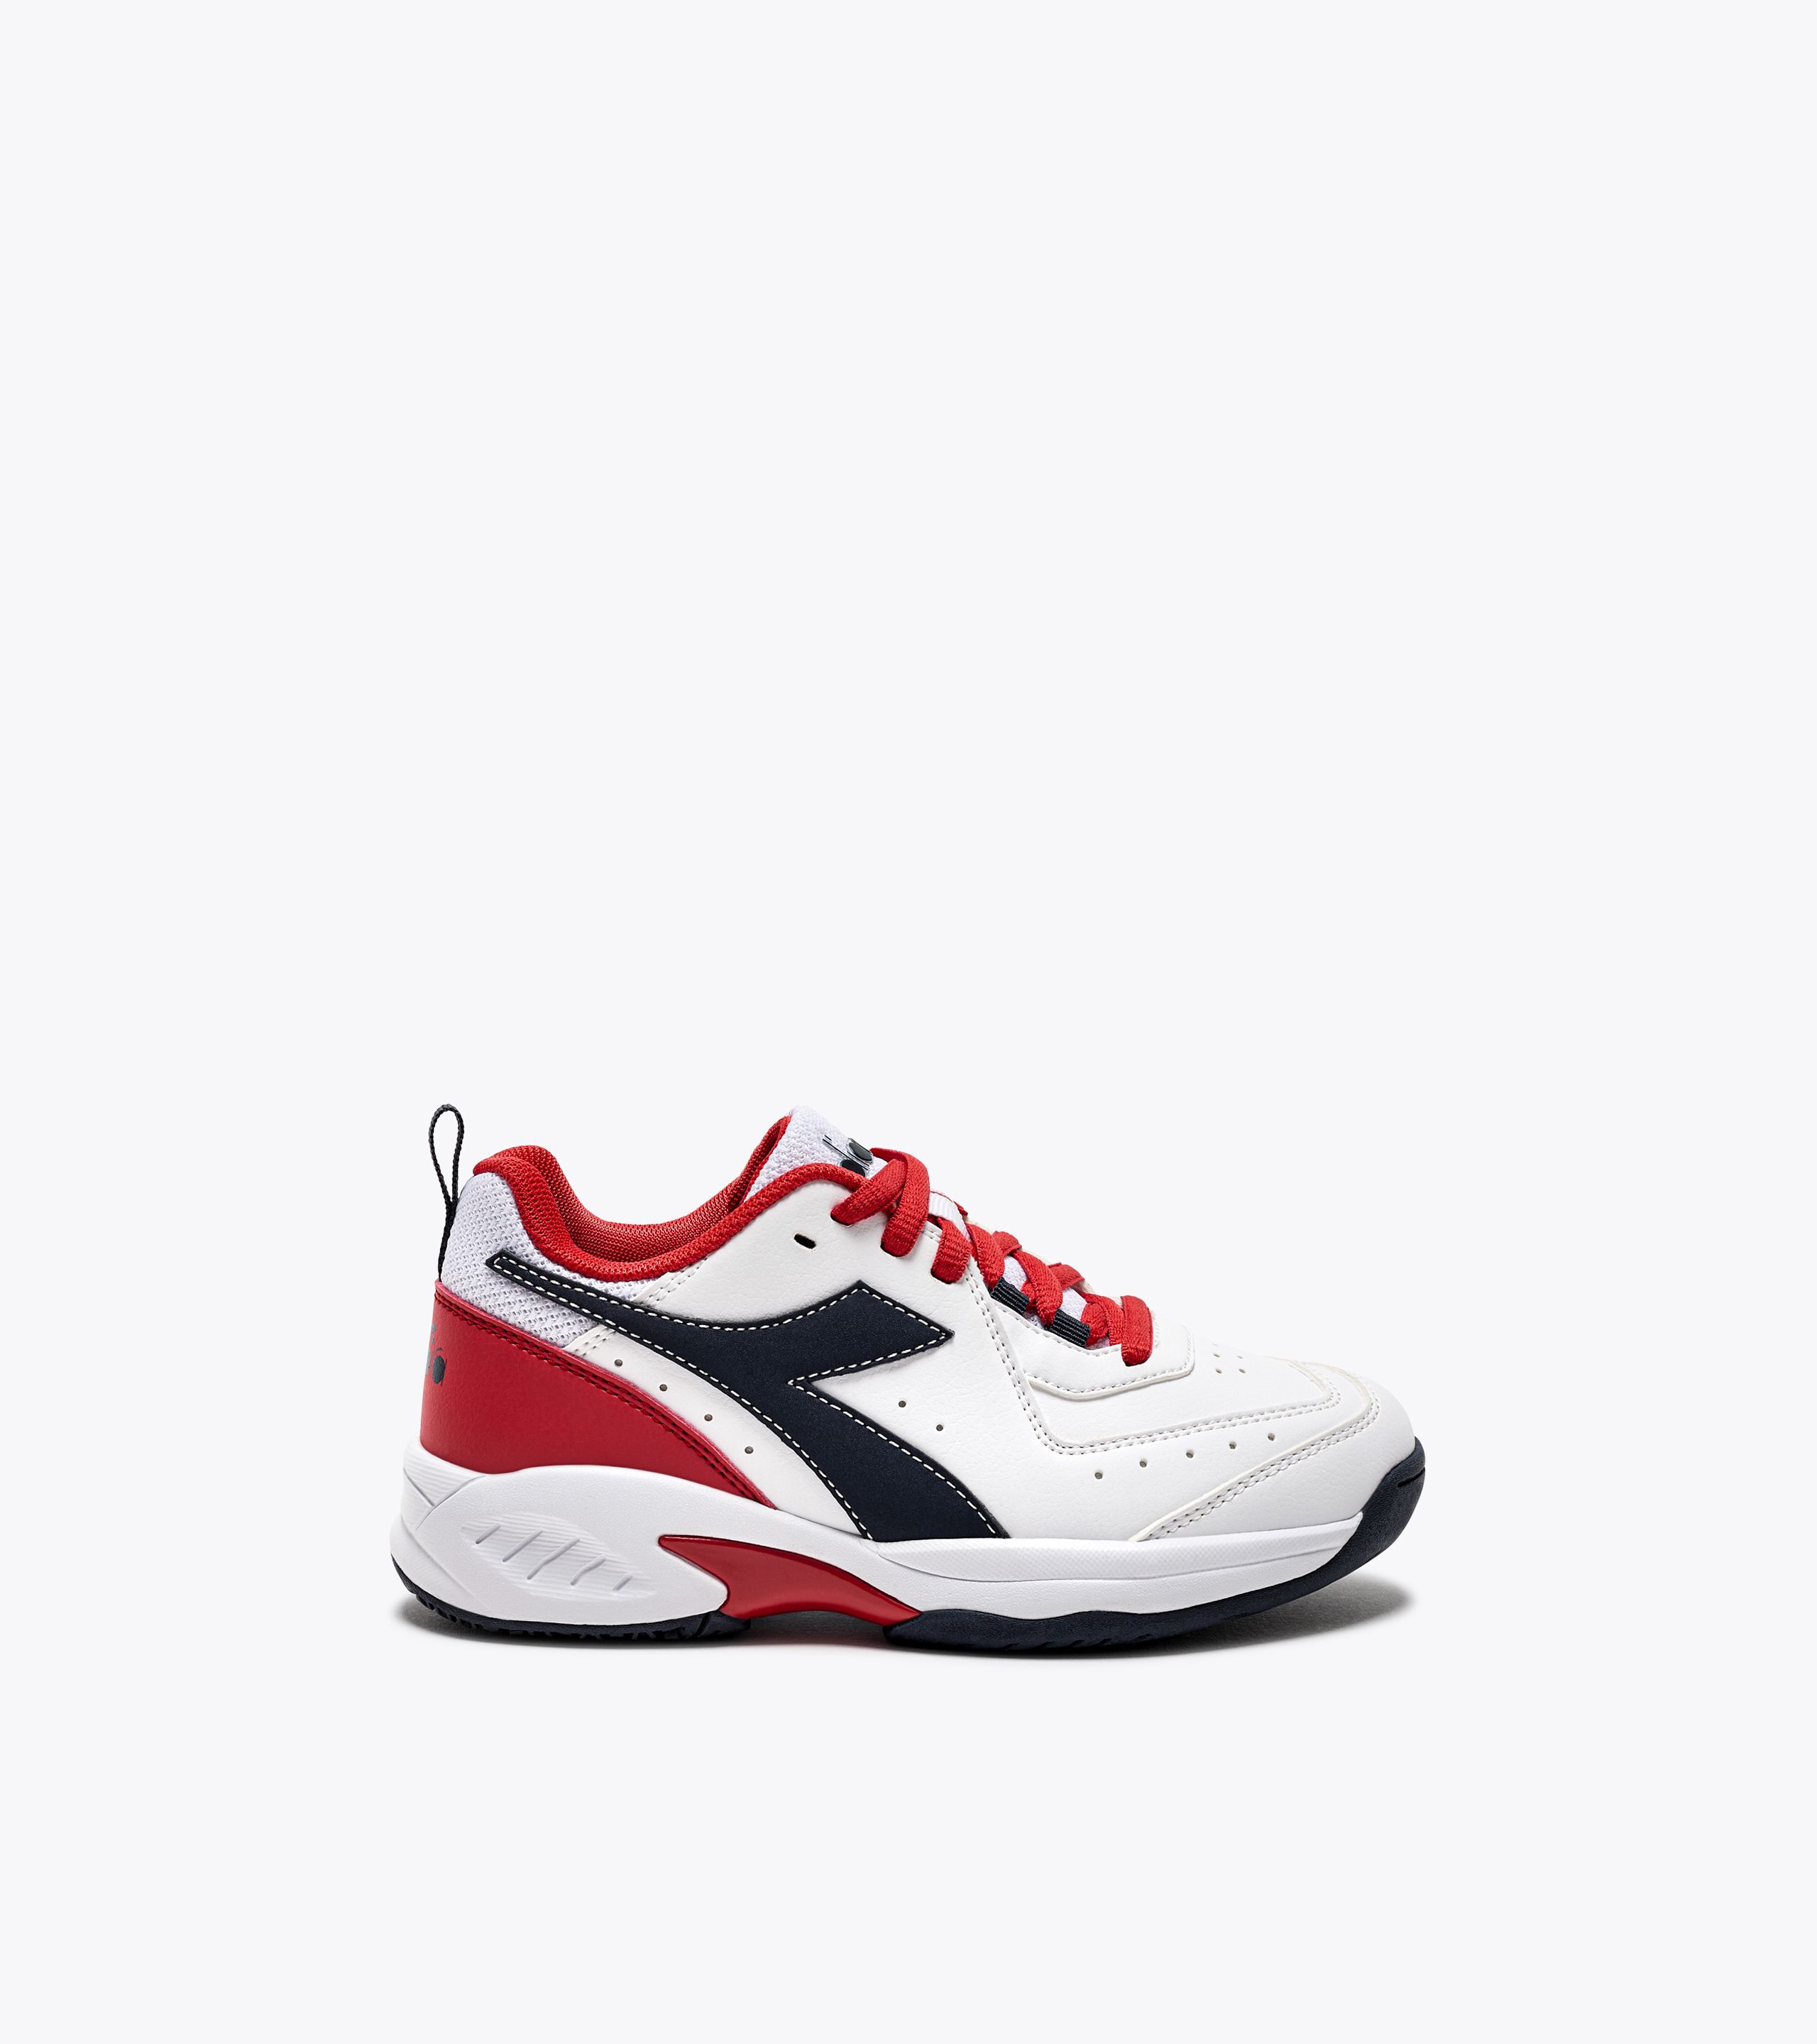 Buy Adidas Men Synthetic Duramo SL 2.0 Running Shoe CBLACK/FTWWHT/CBLACK  (UK-9) at Amazon.in